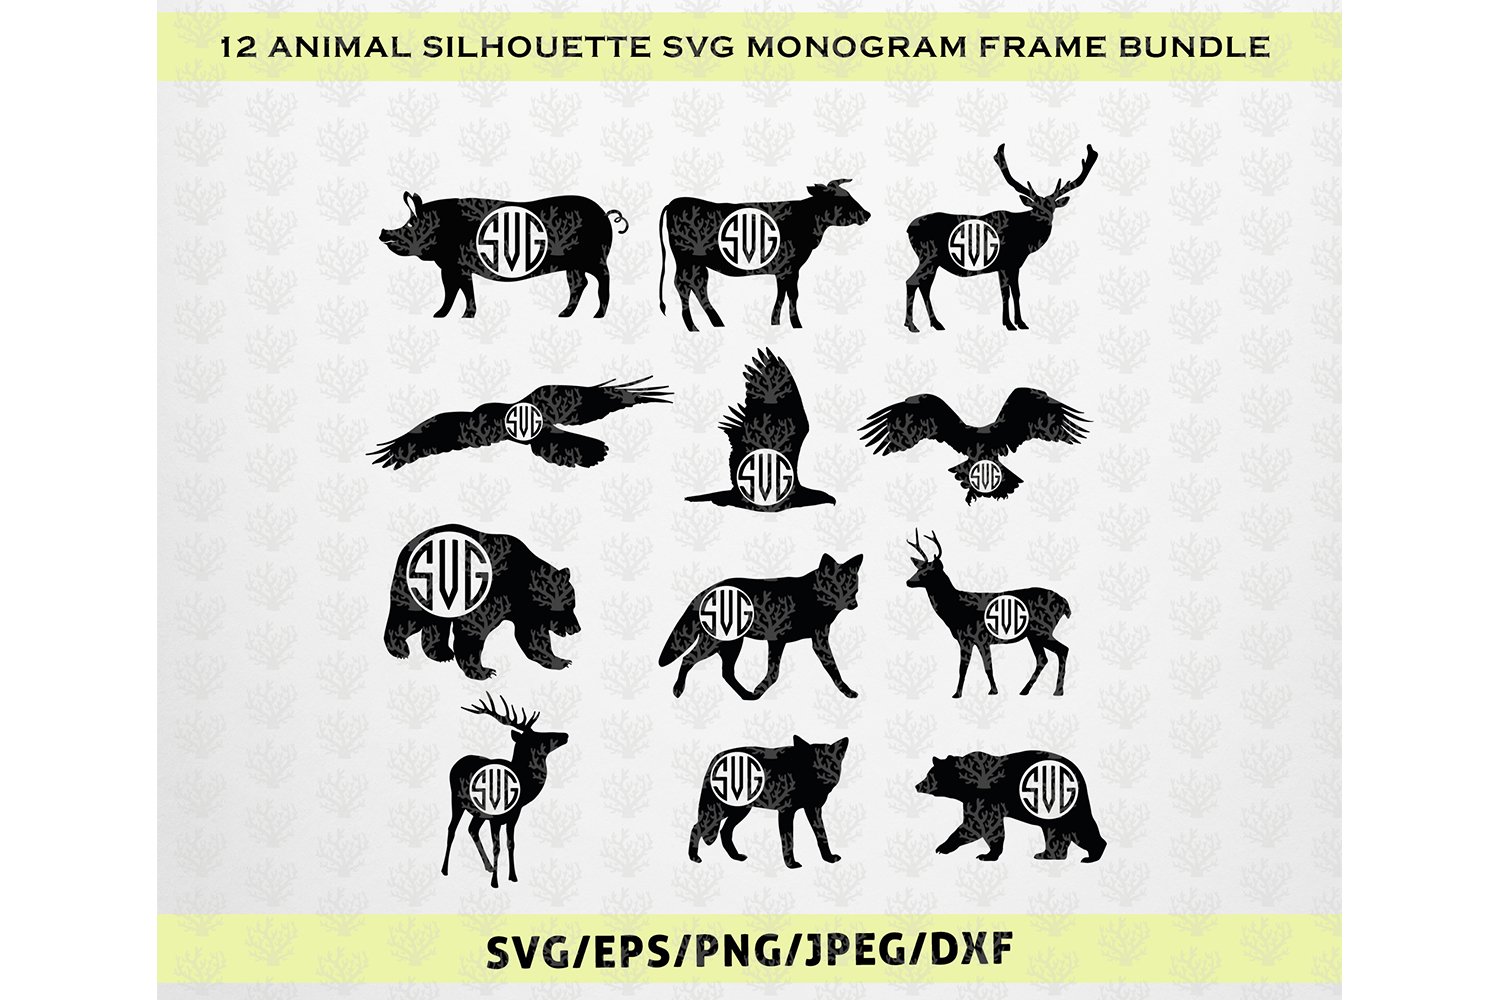 Download Huge SVG Bundles - 12 Animal Silhouette Monogram Frame